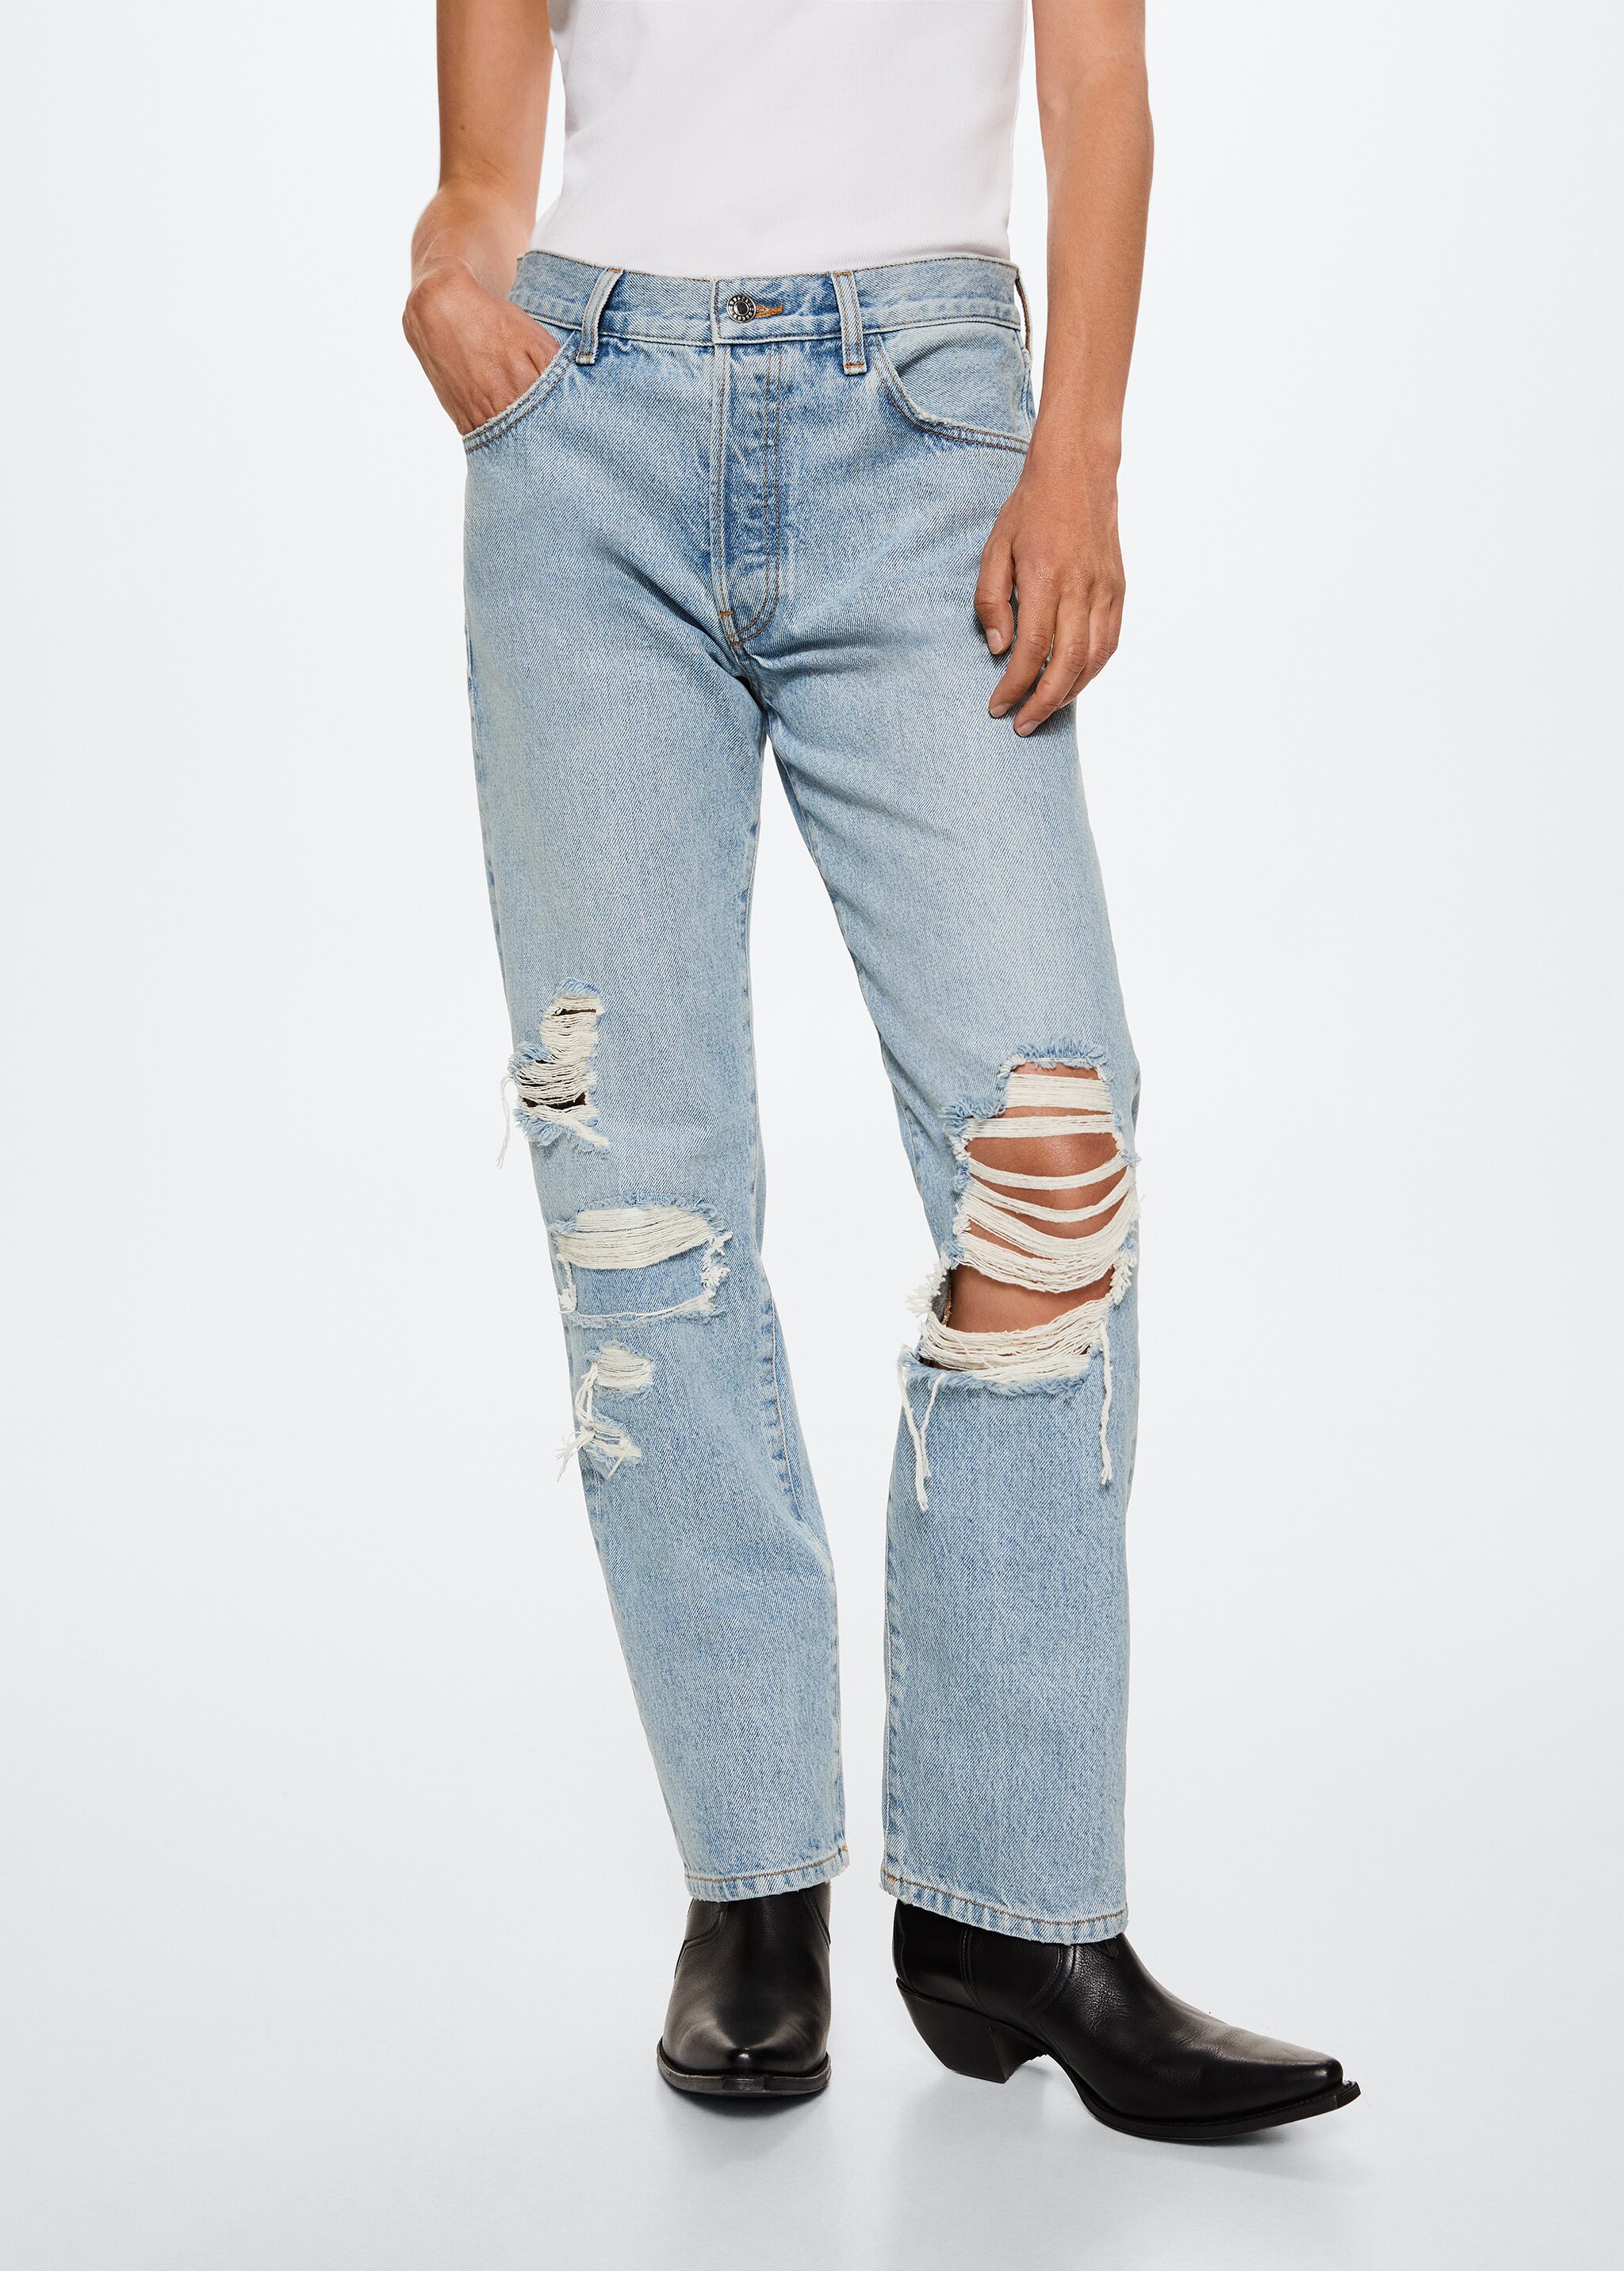 Gerade Jeans mit niedriger Bundhöhe - Mittlere Ansicht